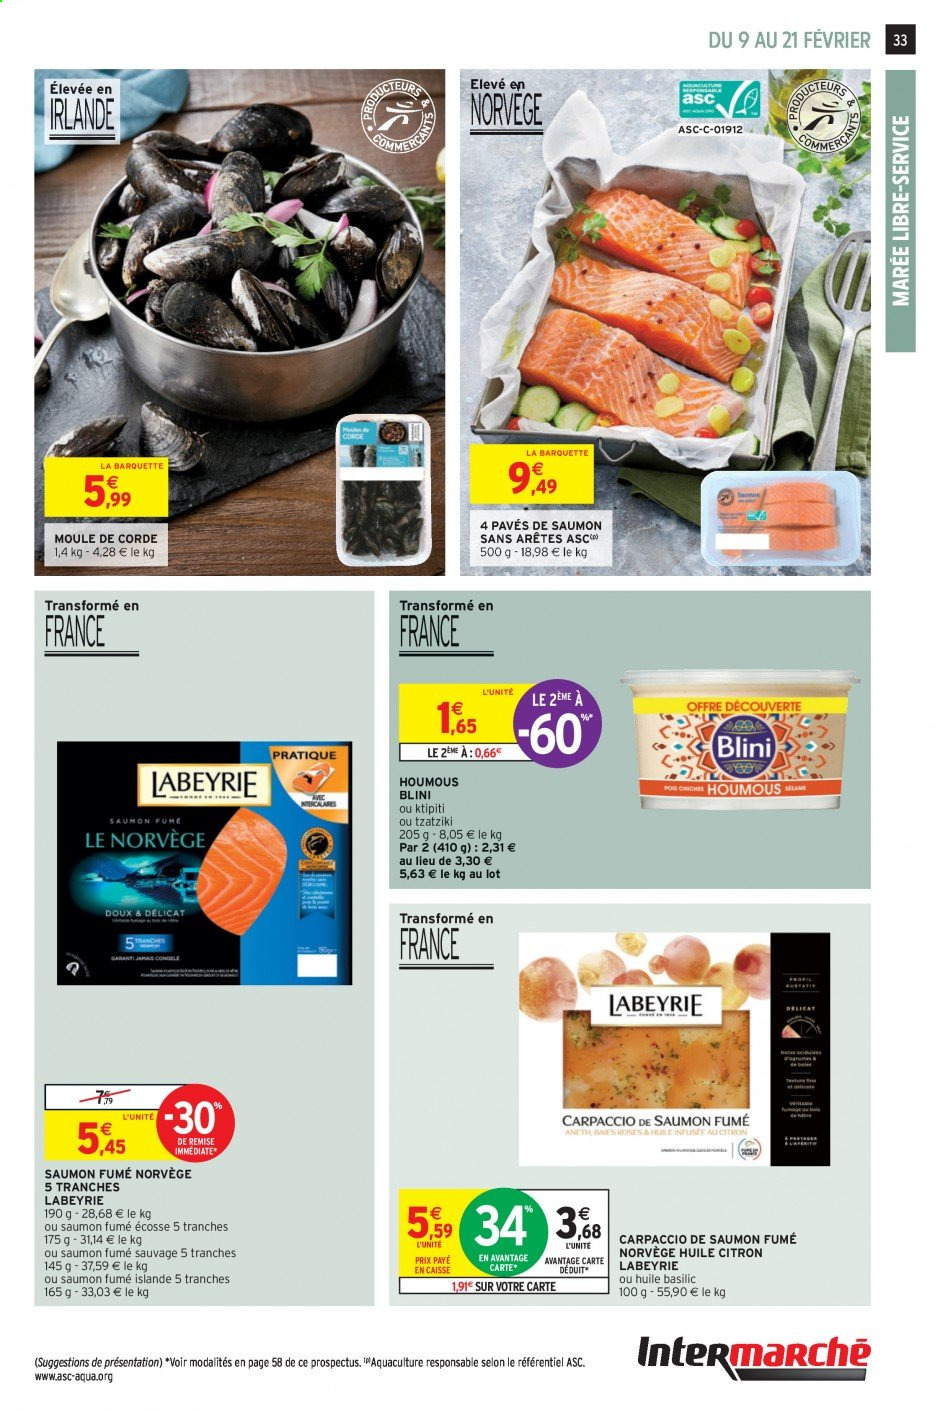 thumbnail - Catalogue Intermarché Super - 09/02/2021 - 21/02/2021 - Produits soldés - carpaccio, Labeyrie, pavés de saumon, blini, houmous, tzatziki, ktipiti, basilic. Page 33.